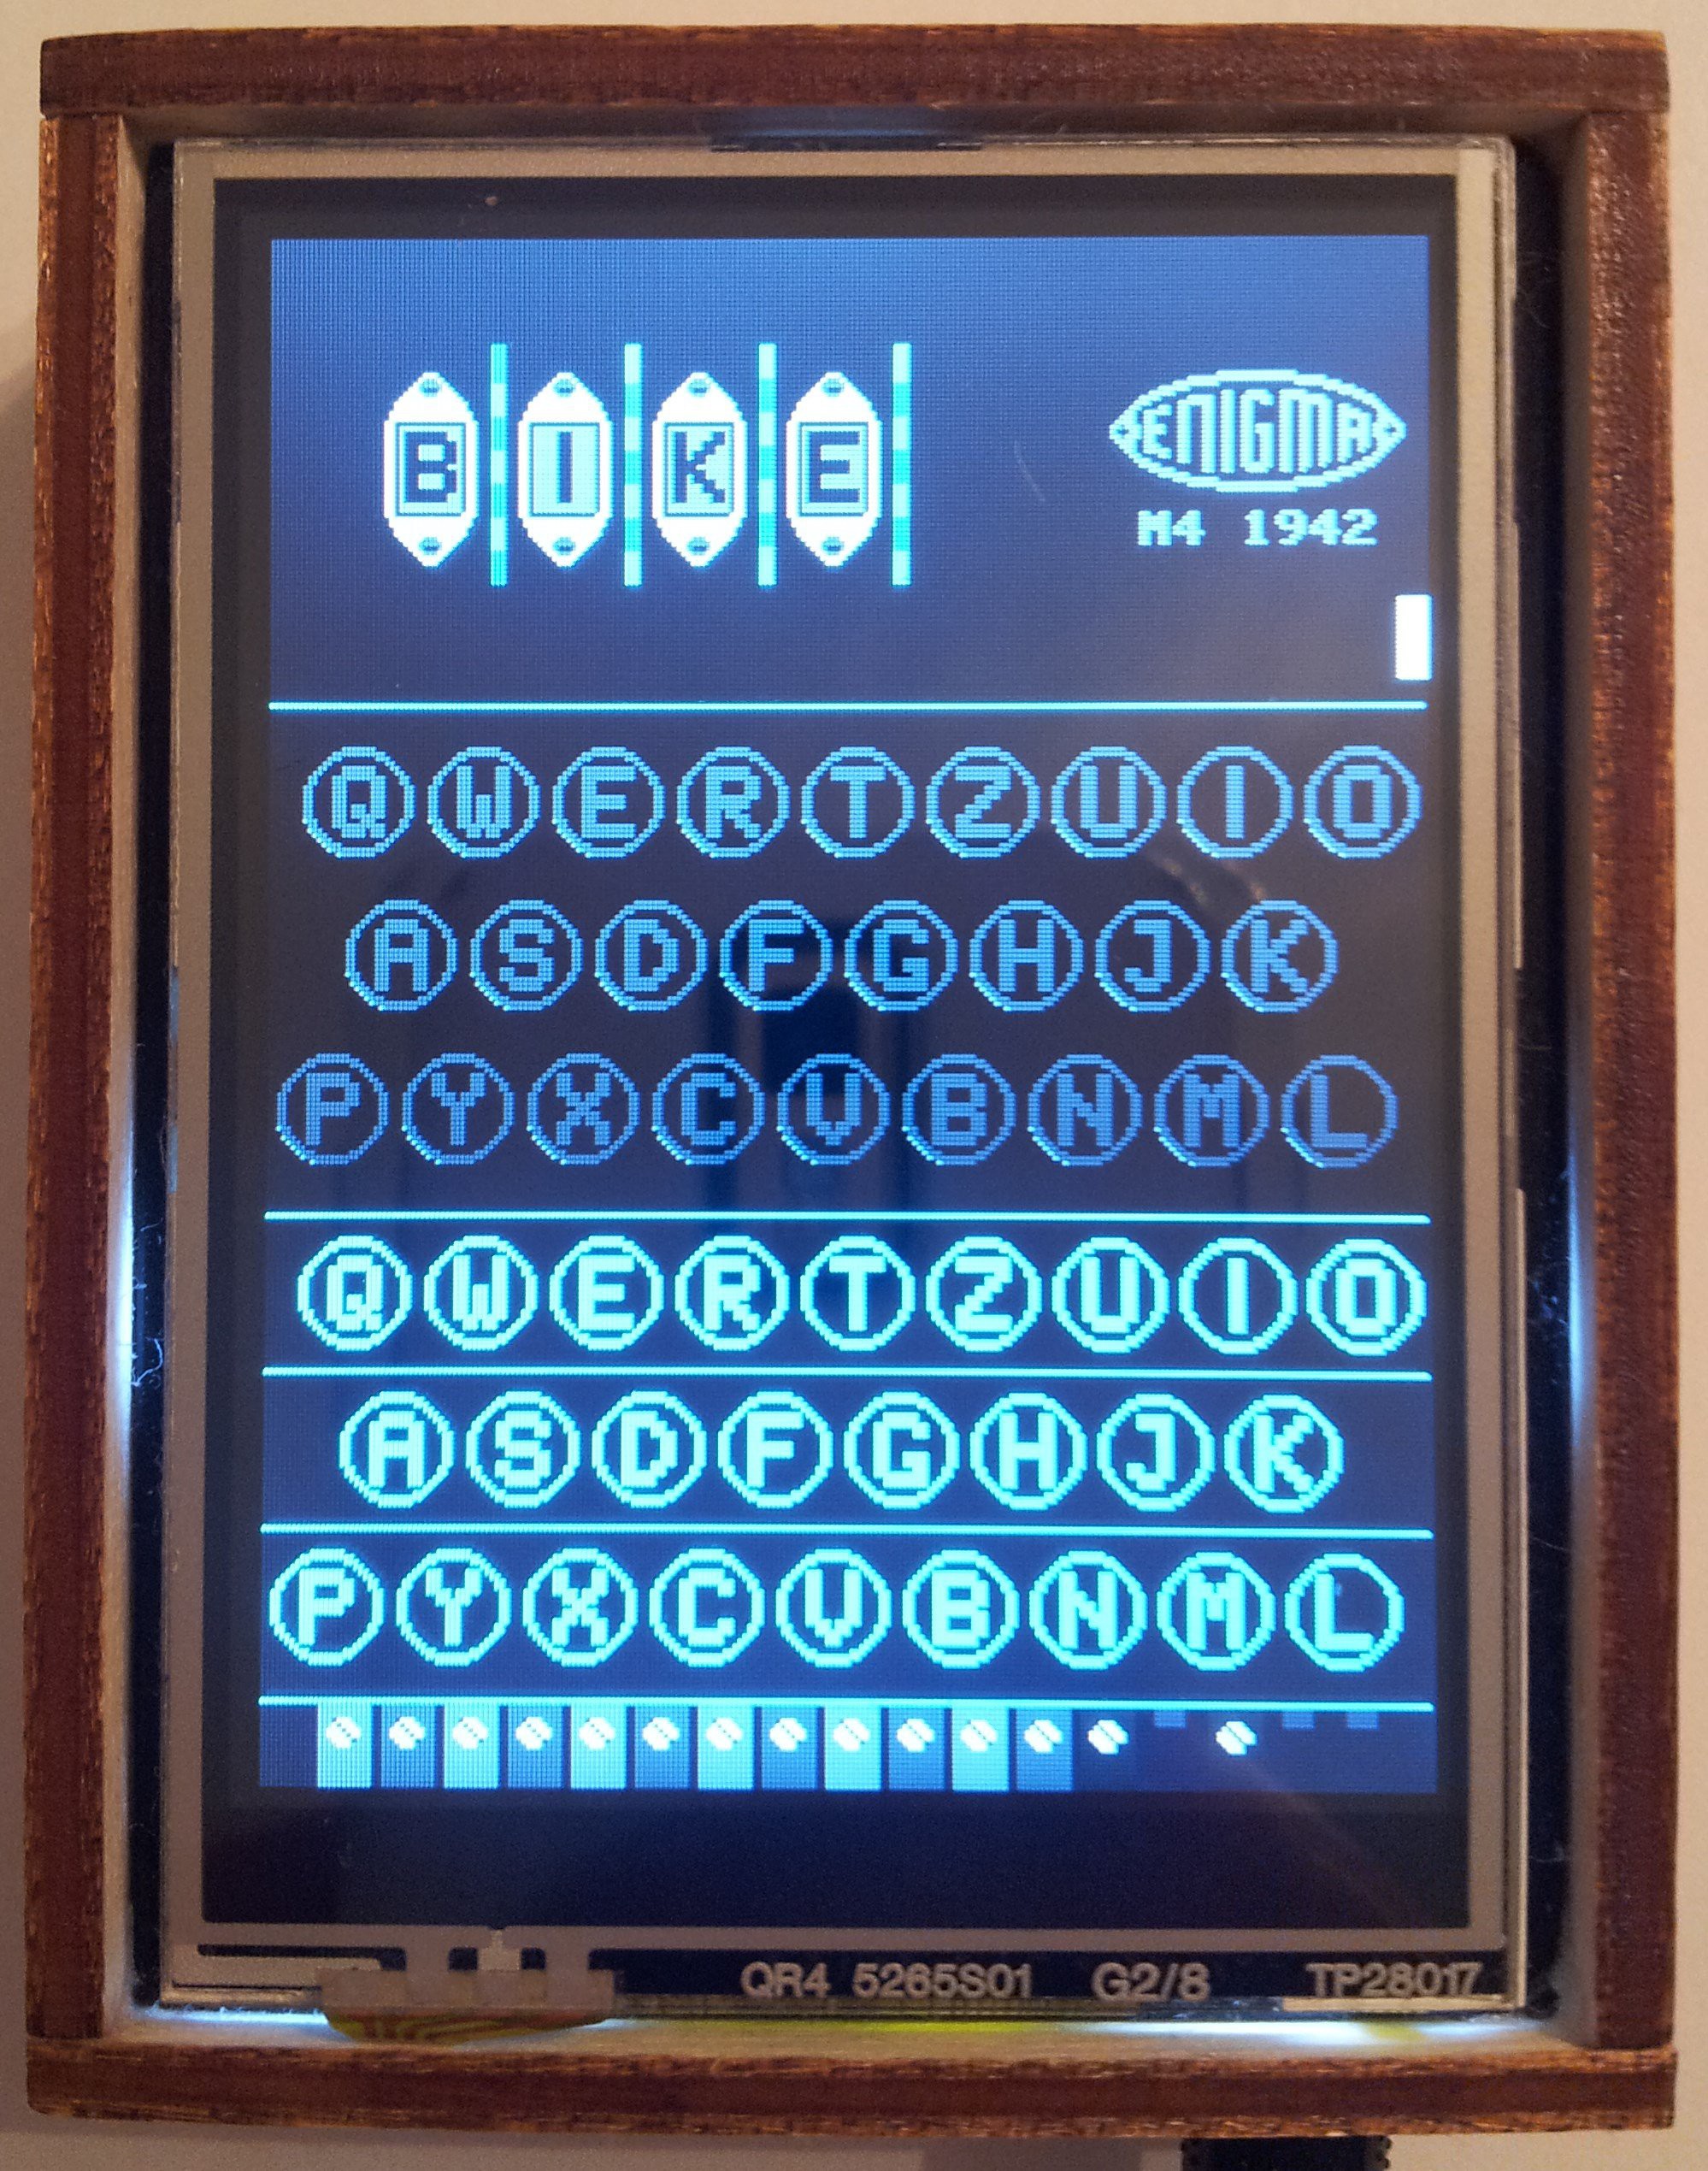 Mininigma: Enigma Simulator on the App Store